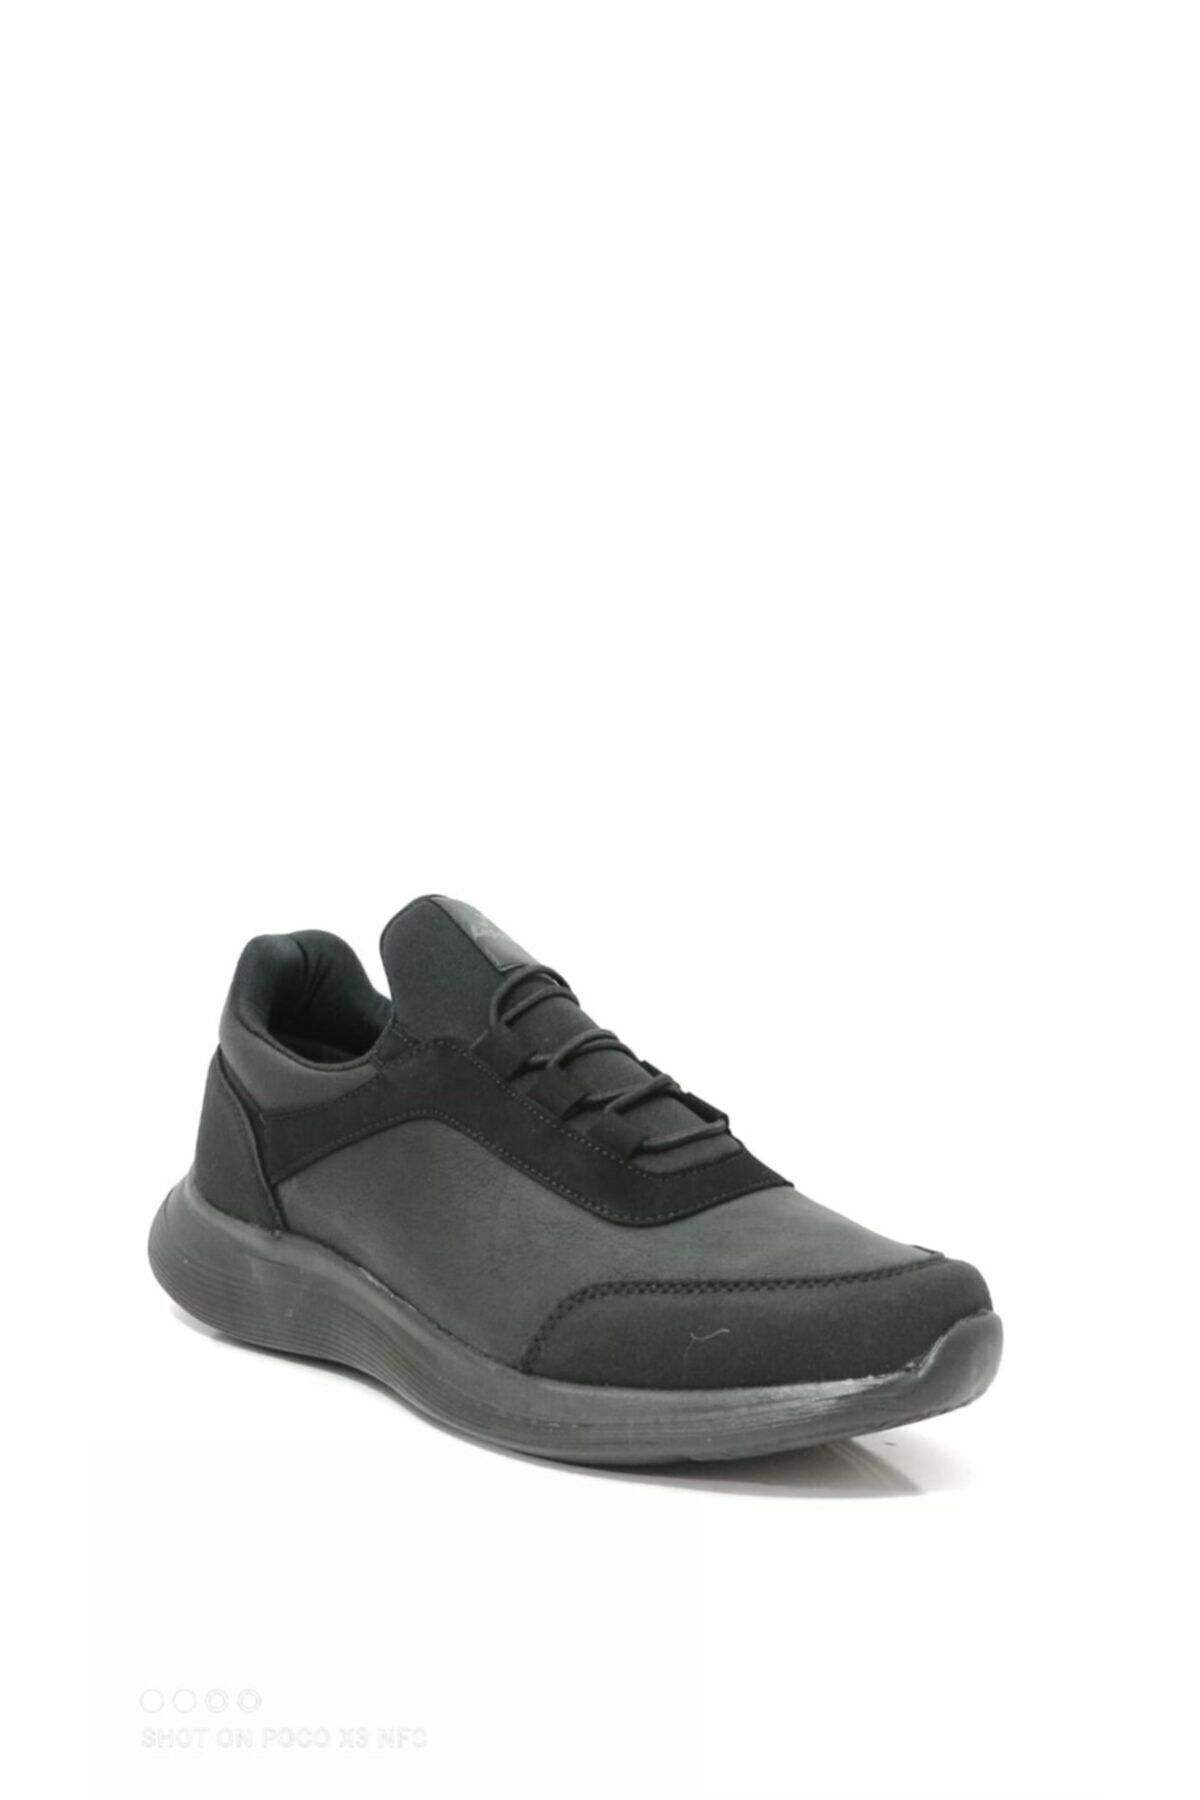 Eynel Unisex Battal Boy Nubuk Şık Rahat Spor Iş Ayakkabısı Yürüyüş Sneaker Günlük Casual Model